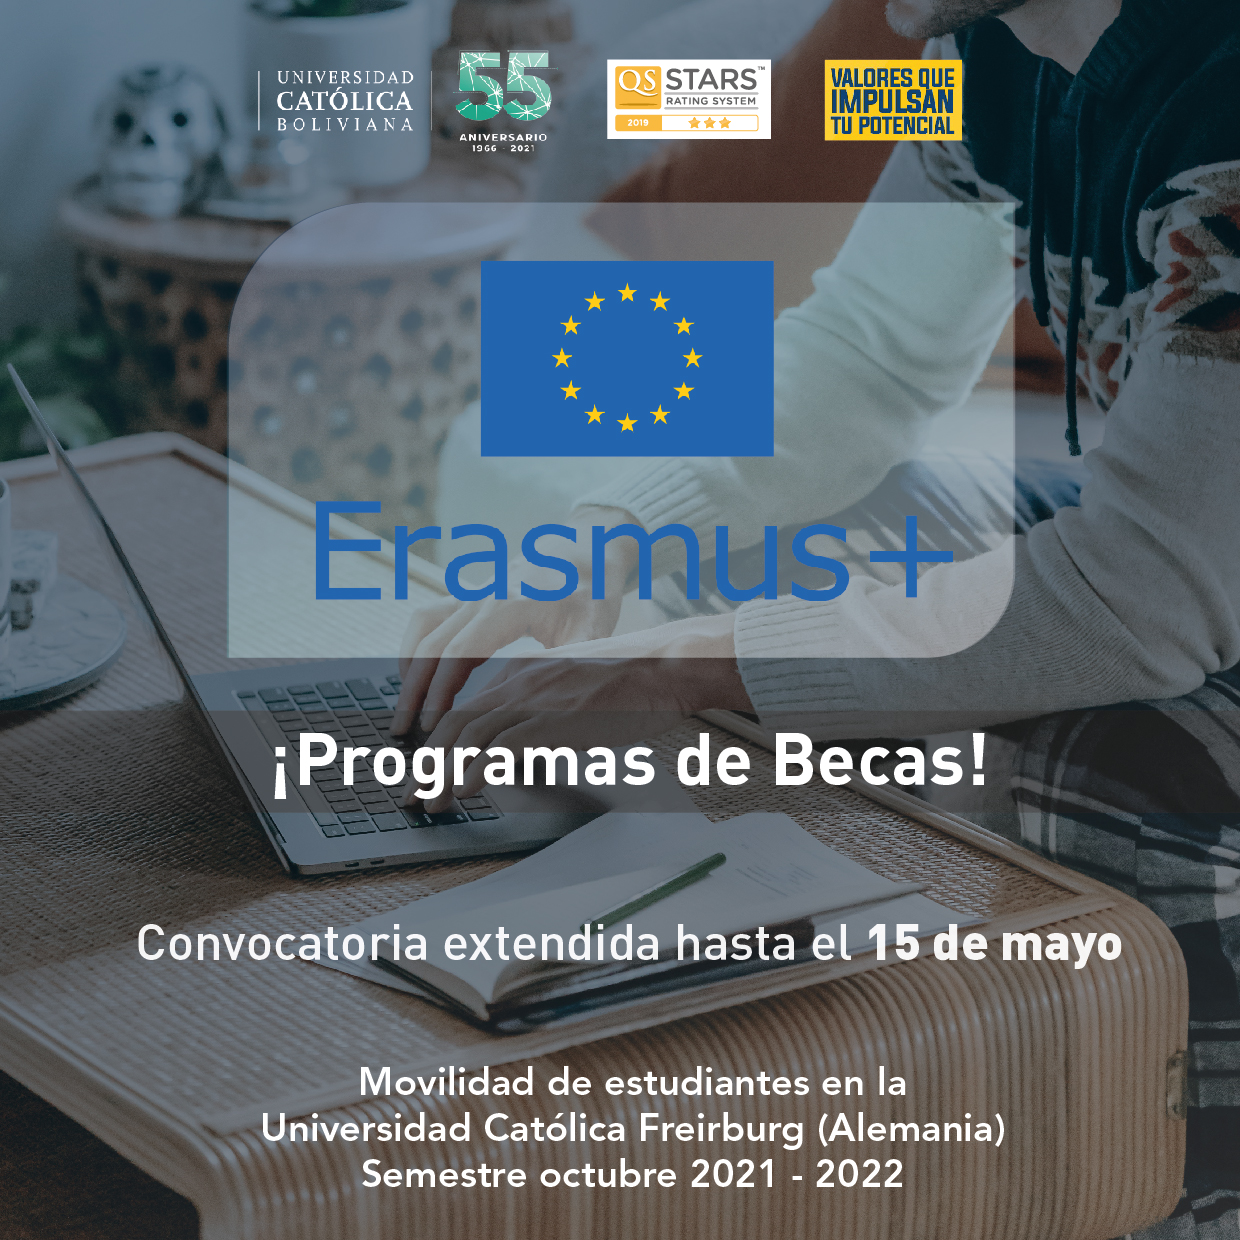 Programa de Becas ERASMUS+ para la movilidad de estudiantes en la Universidad Católica de Freiburgo en Alemania.